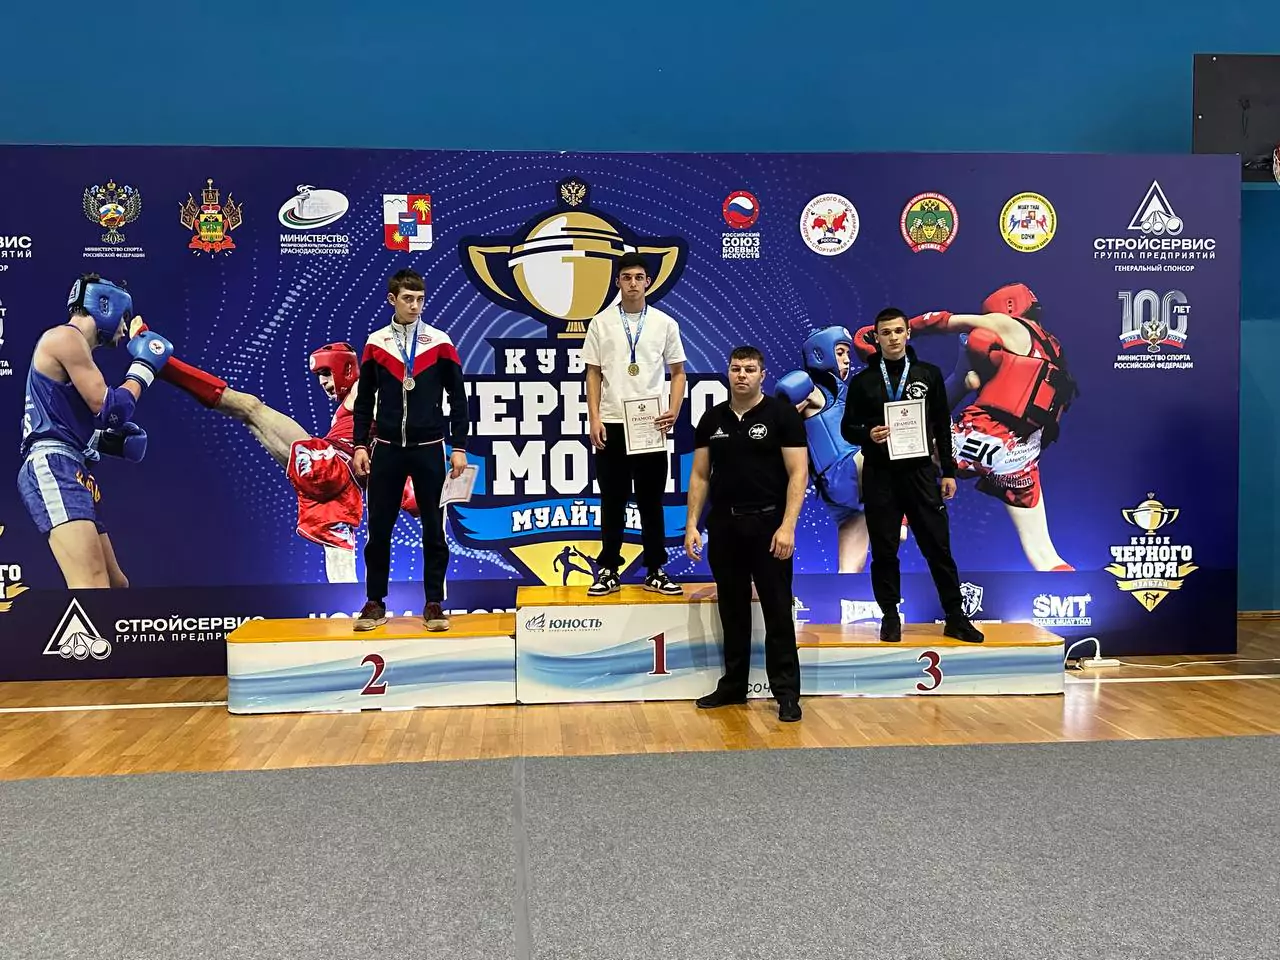 Армавирские спортсмены взяли золото и серебро на турнире по тайскому боксу